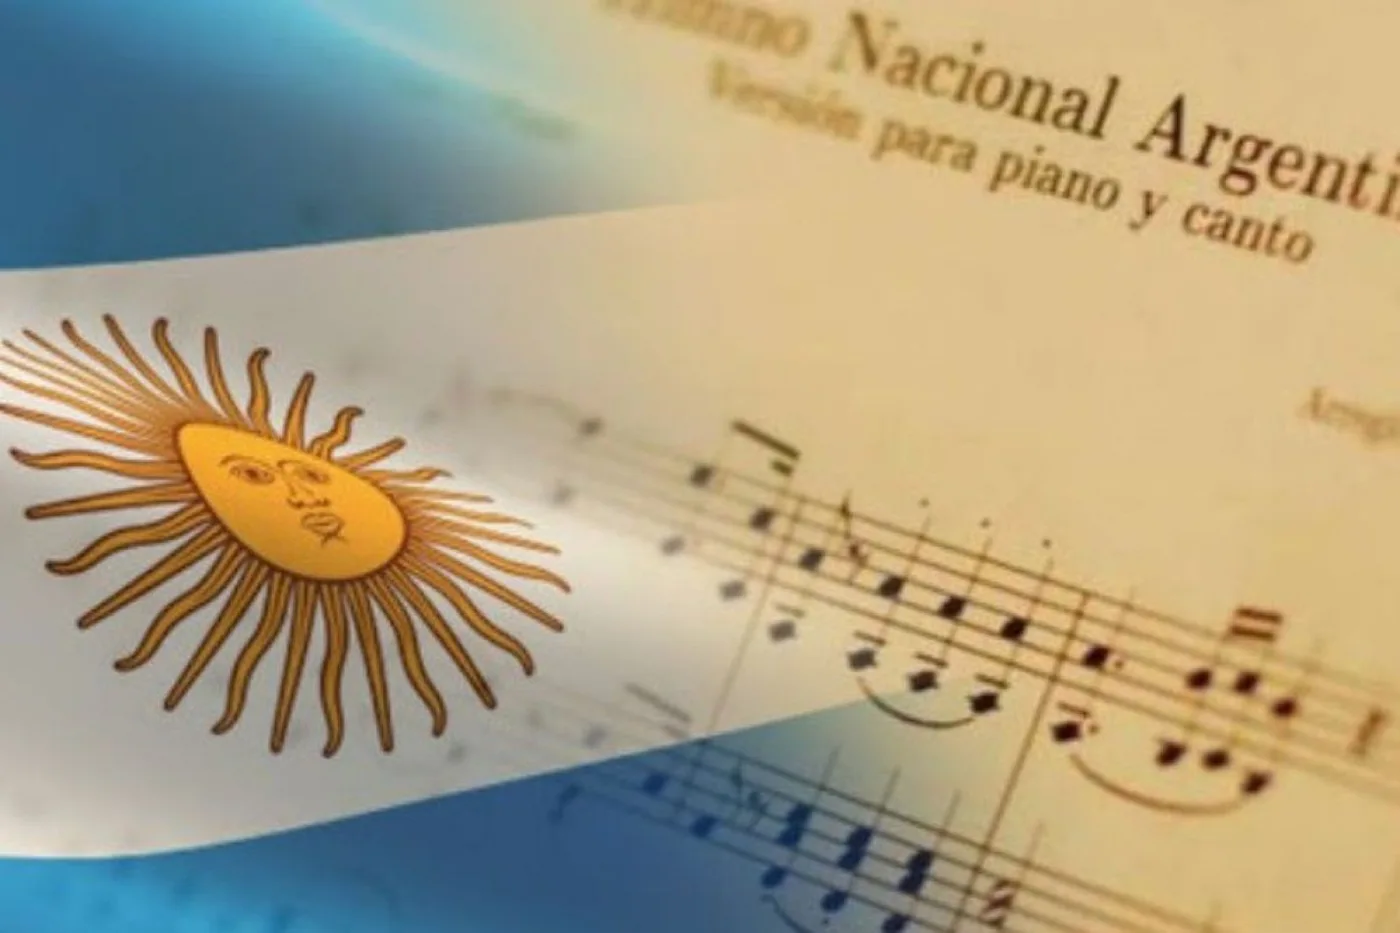 11 de mayo Día del Himno Nacional Argentino